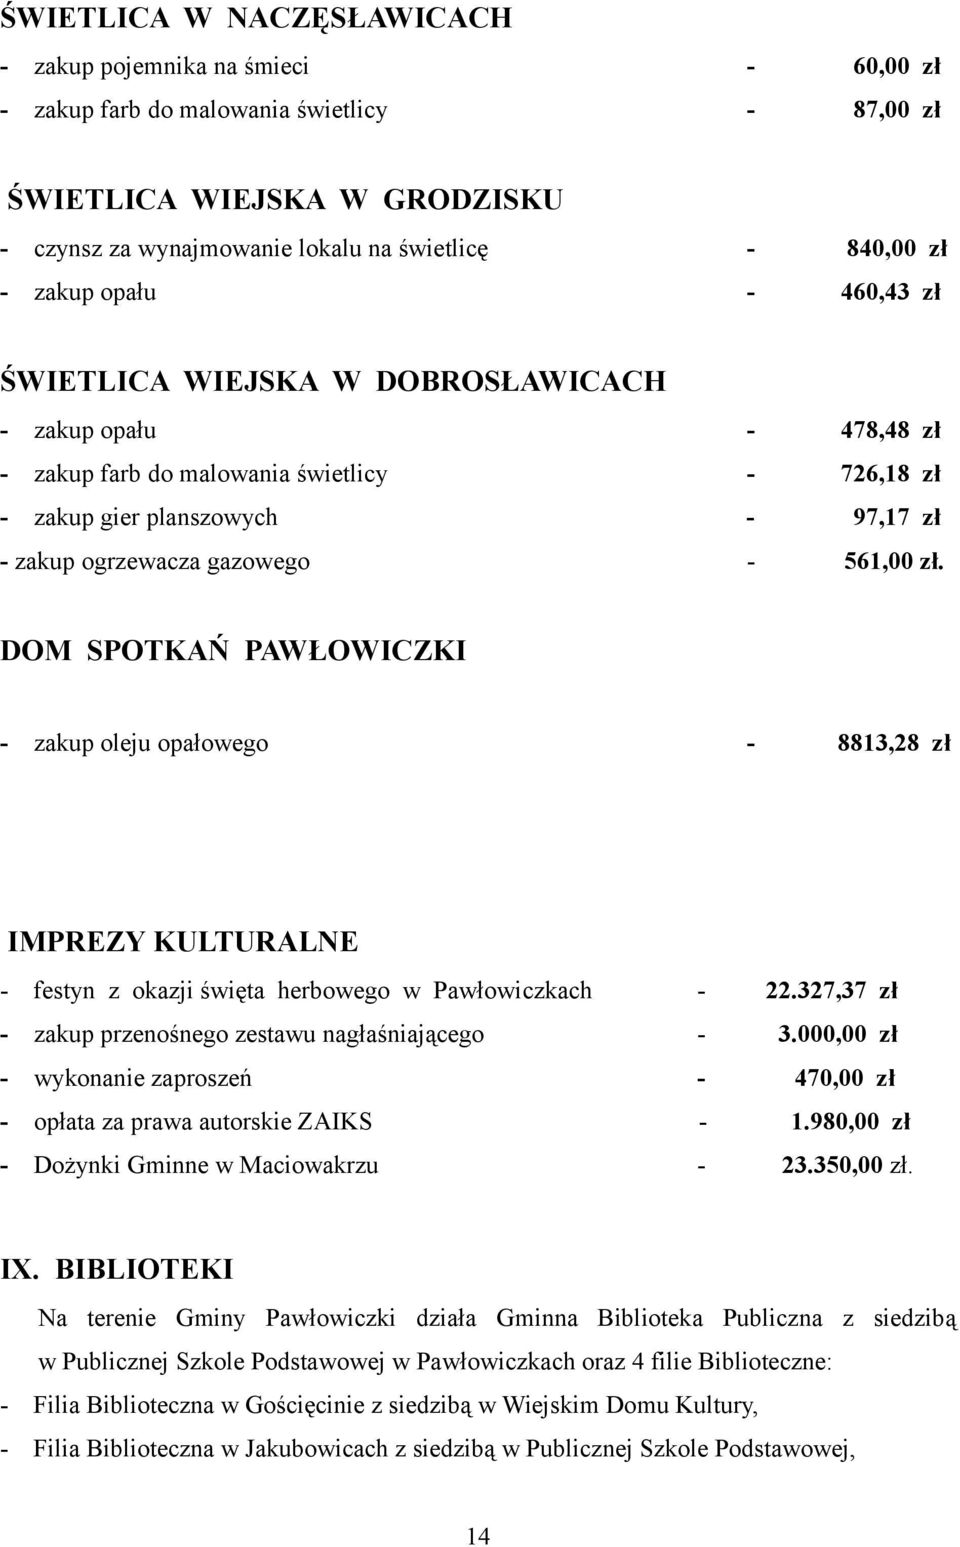 DOM SPOTKAŃ PAWŁOWICZKI - zakup oleju opałowego - 8813,28 IMPREZY KULTURALNE - festyn z okazji święta herbowego w Pawłowiczkach - 22.327,37 - zakup przenośnego zestawu nagłaśniającego - 3.